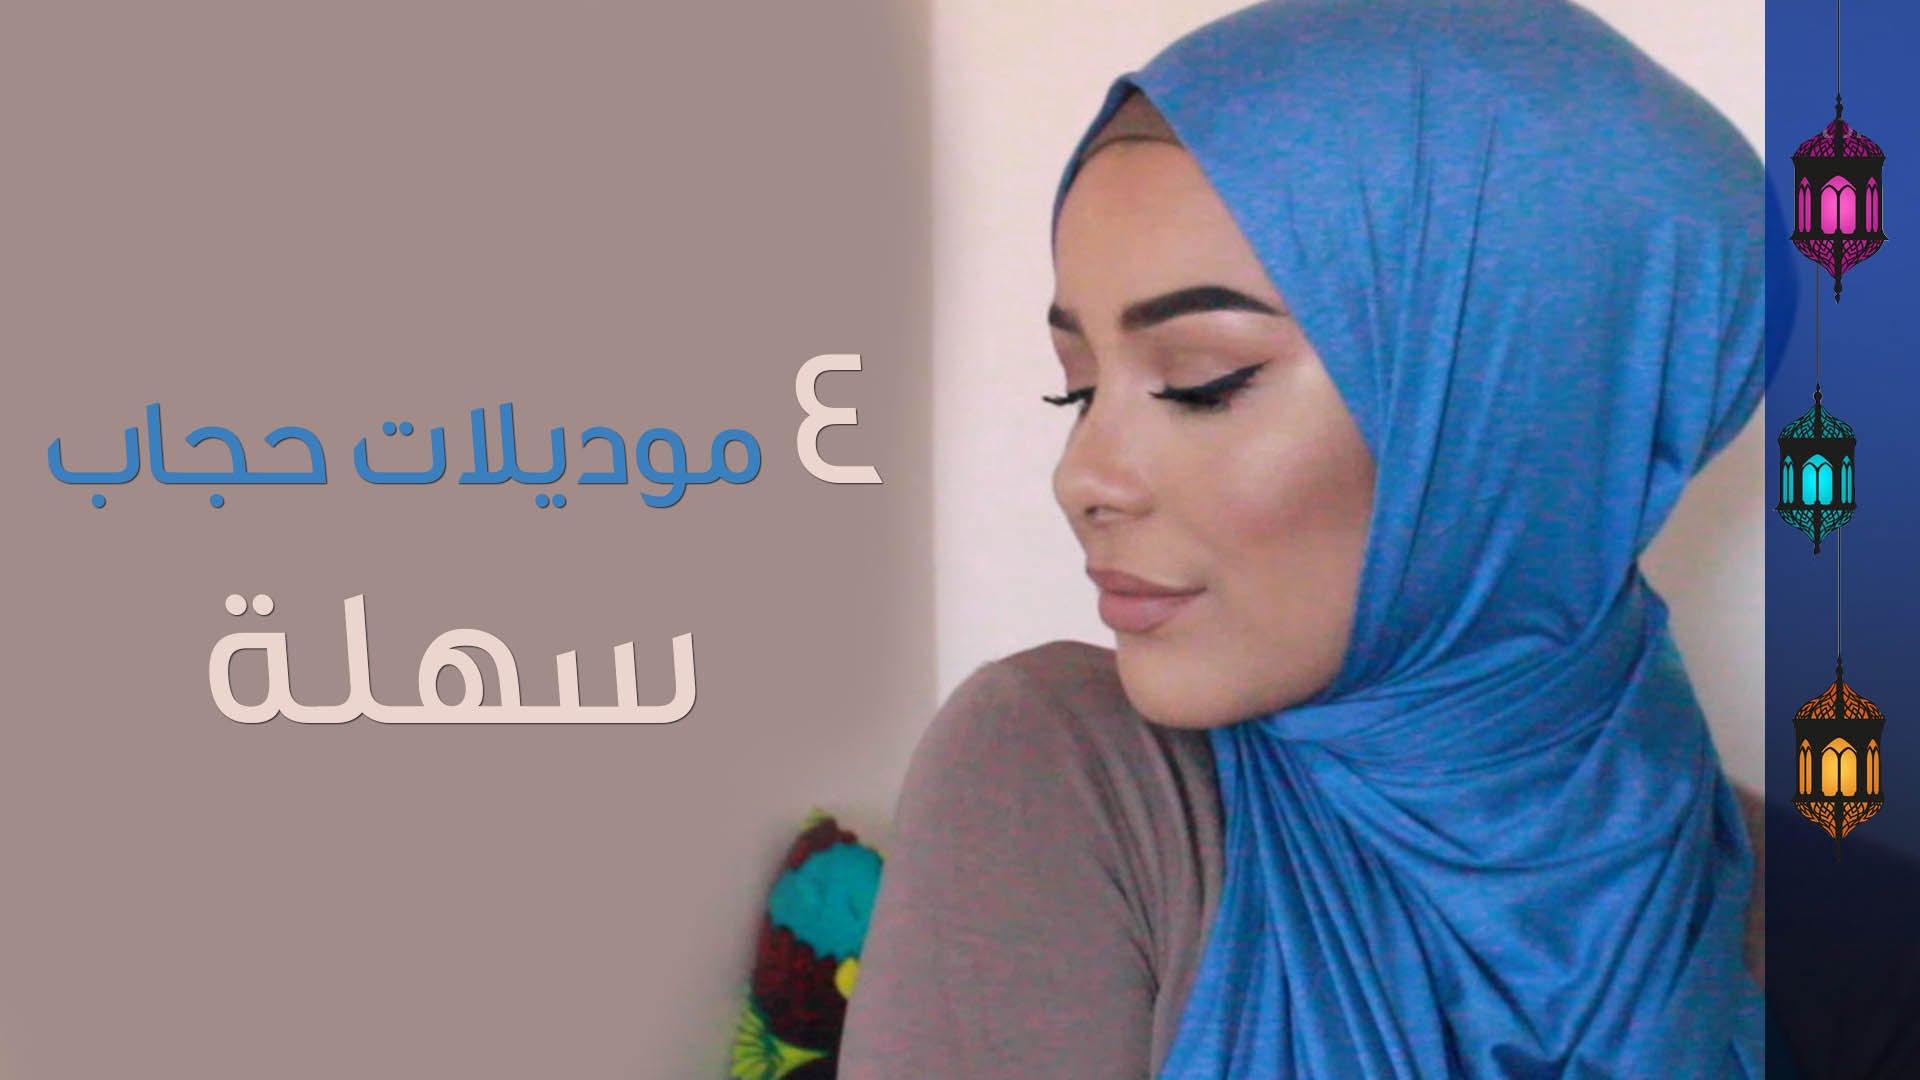 لفات حجاب سهلة lafat hijab sahla